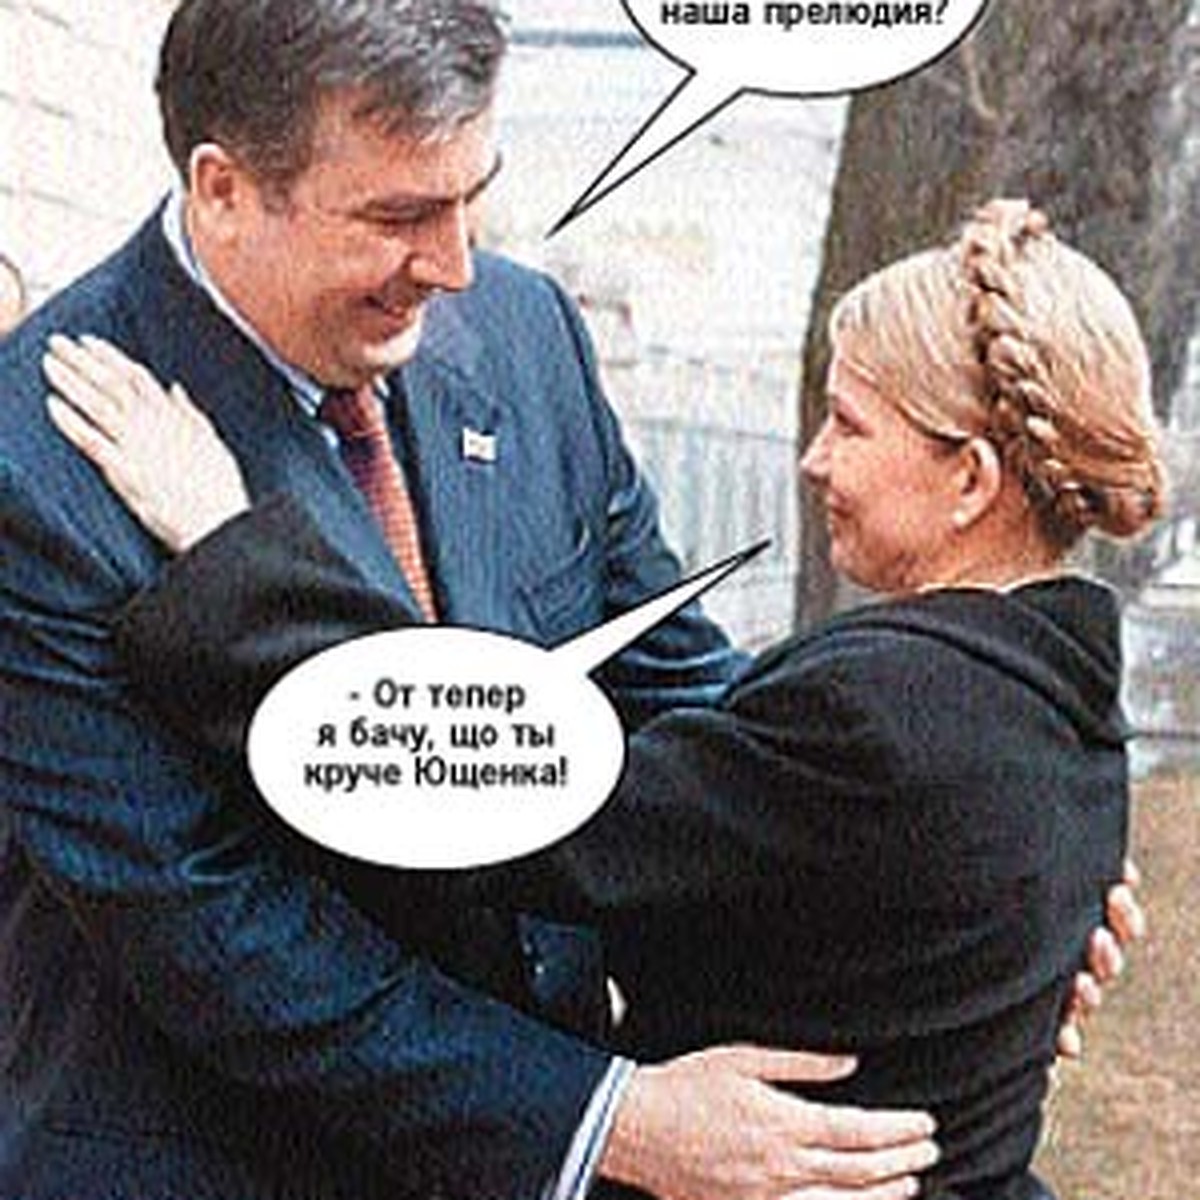 Тимошенко и Саакашвили попали в эротический триллер - KP.RU